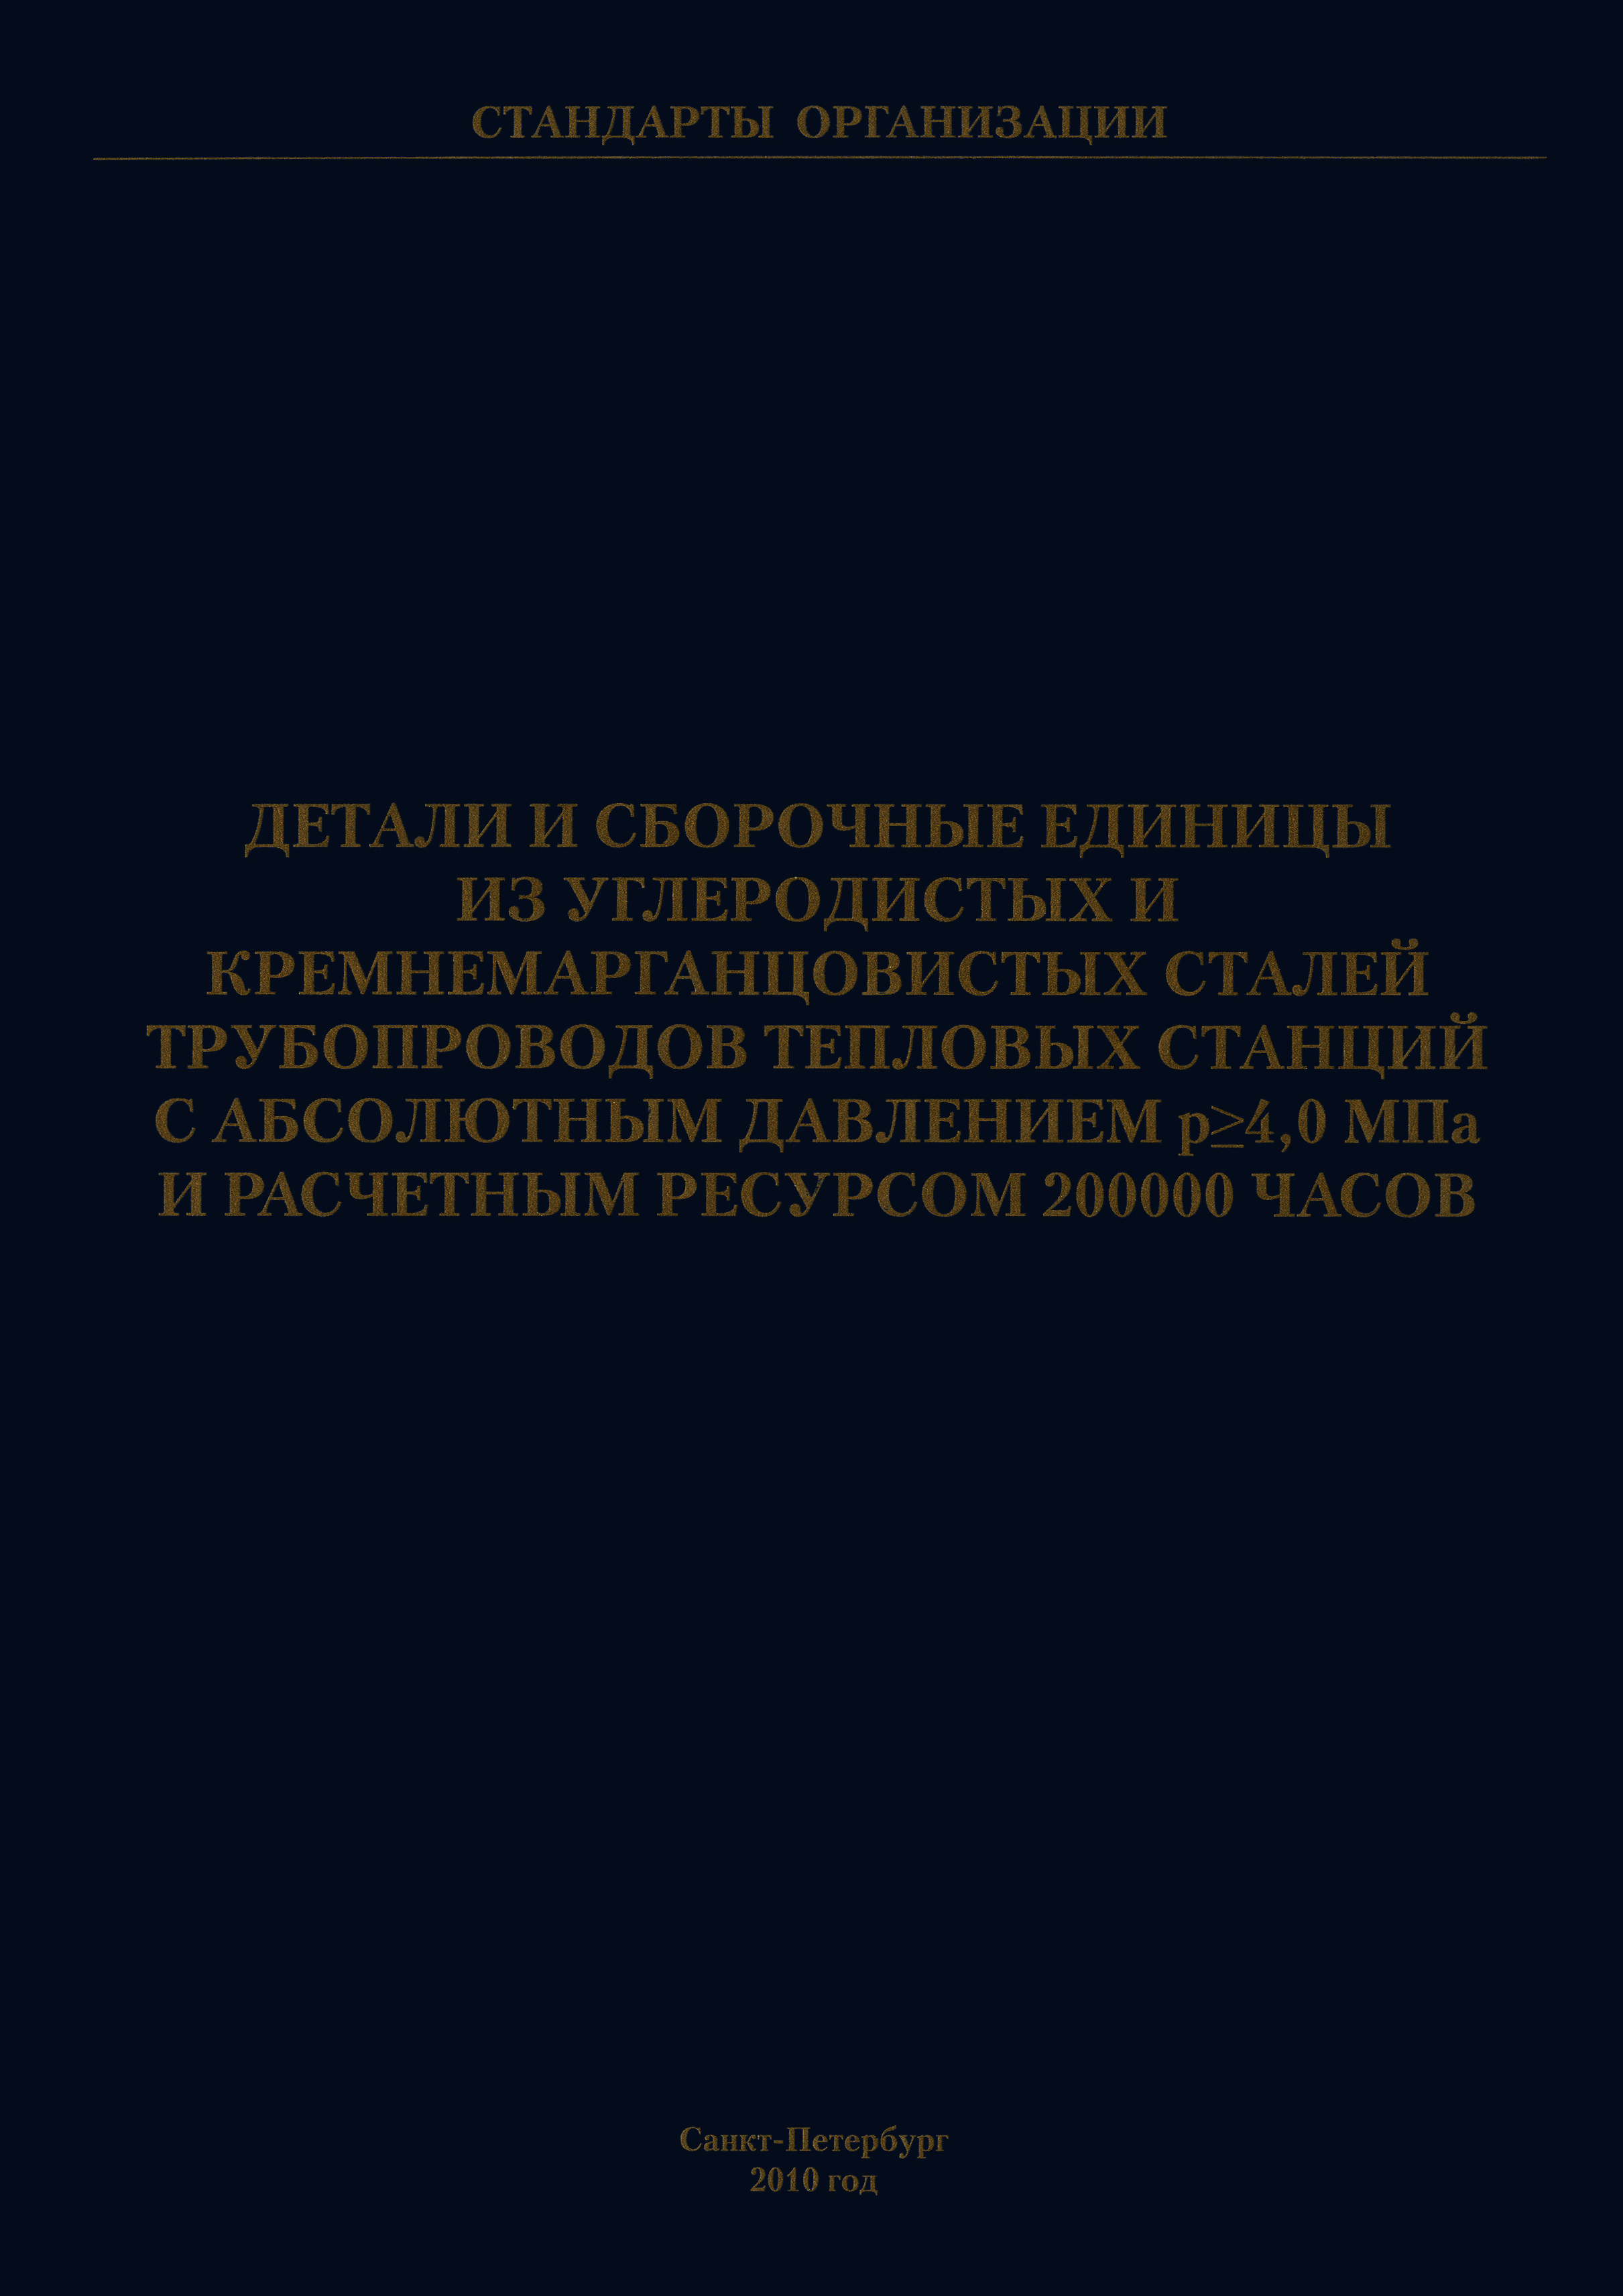 СТО ЦКТИ 530.01-2009